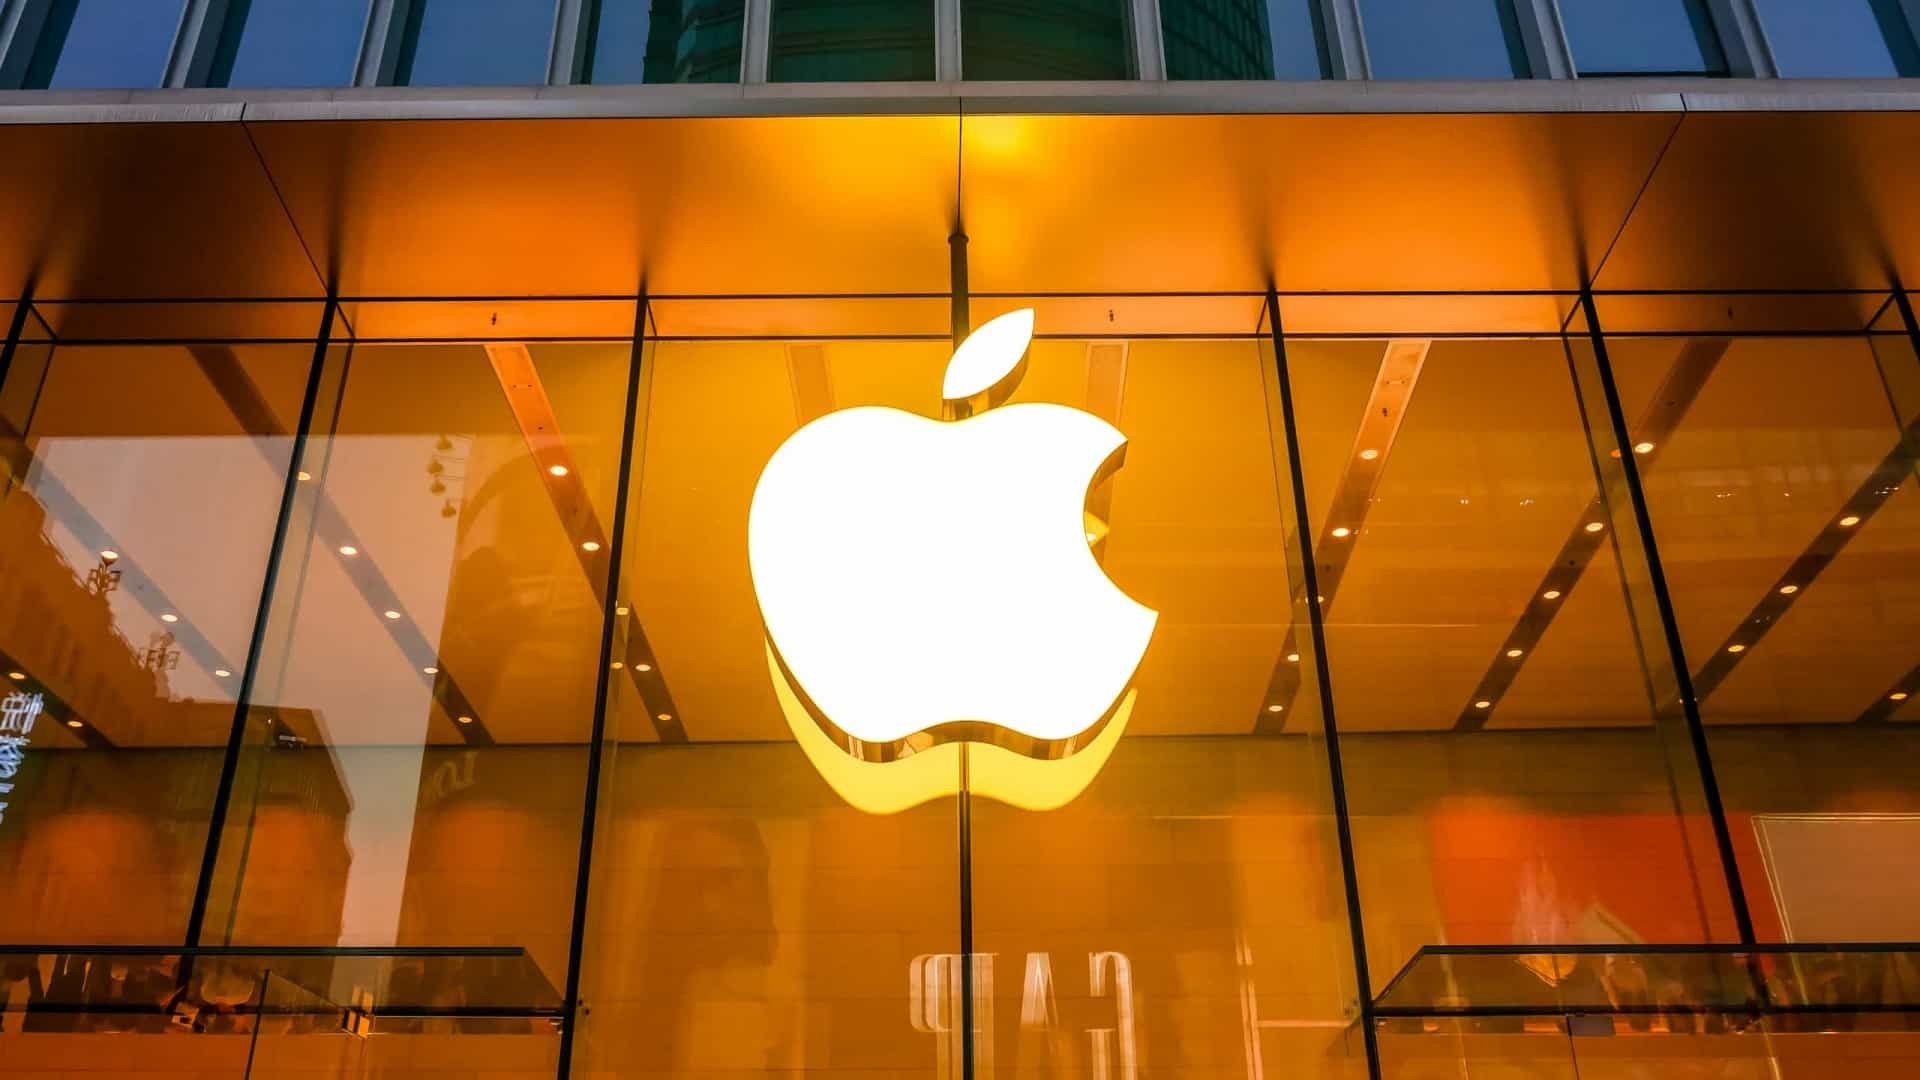 Apple đã bắt đầu sản xuất thử nghiệm của iPhone 13 ở Hon Hai Group tại Chennai và nơi này dự kiến sẽ sản xuất iPhone 13 ở Ấn Độ vào 2 năm sau cho thị trường trong nước và nước ngoài. Ảnh: @AFP.